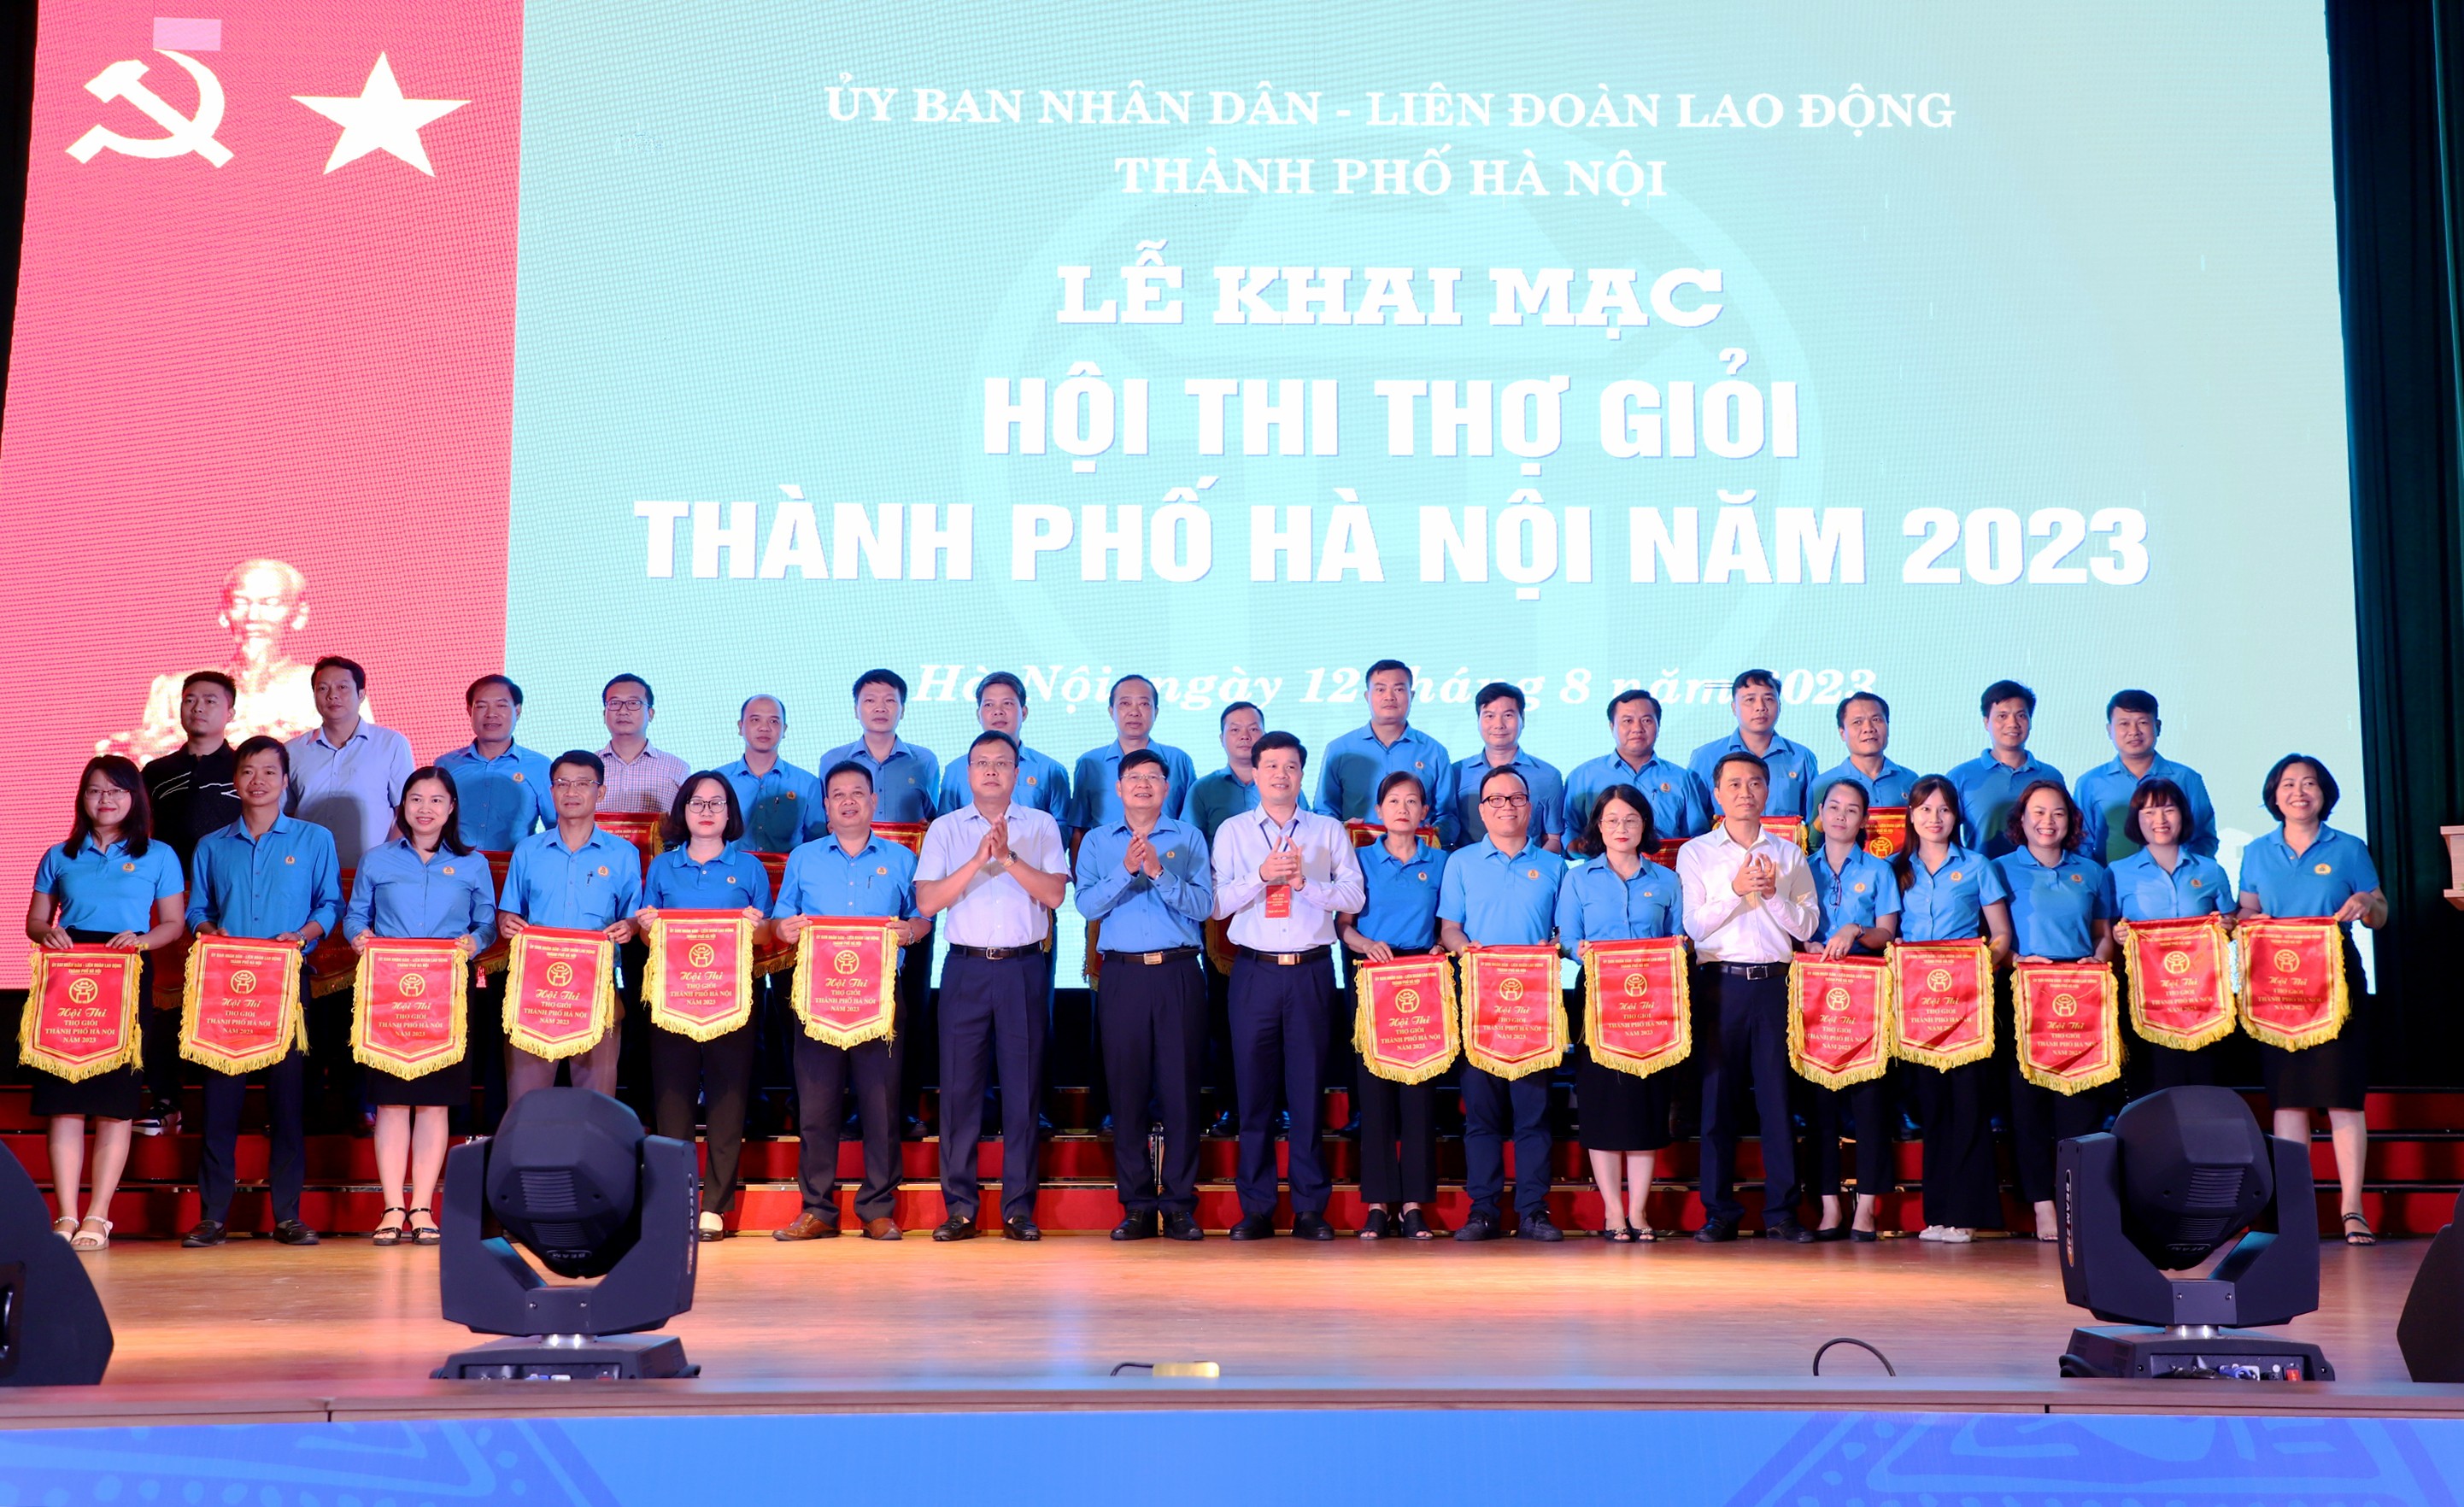 Hình ảnh ấn tượng tại Hội thi thợ giỏi thành phố Hà Nội năm 2023